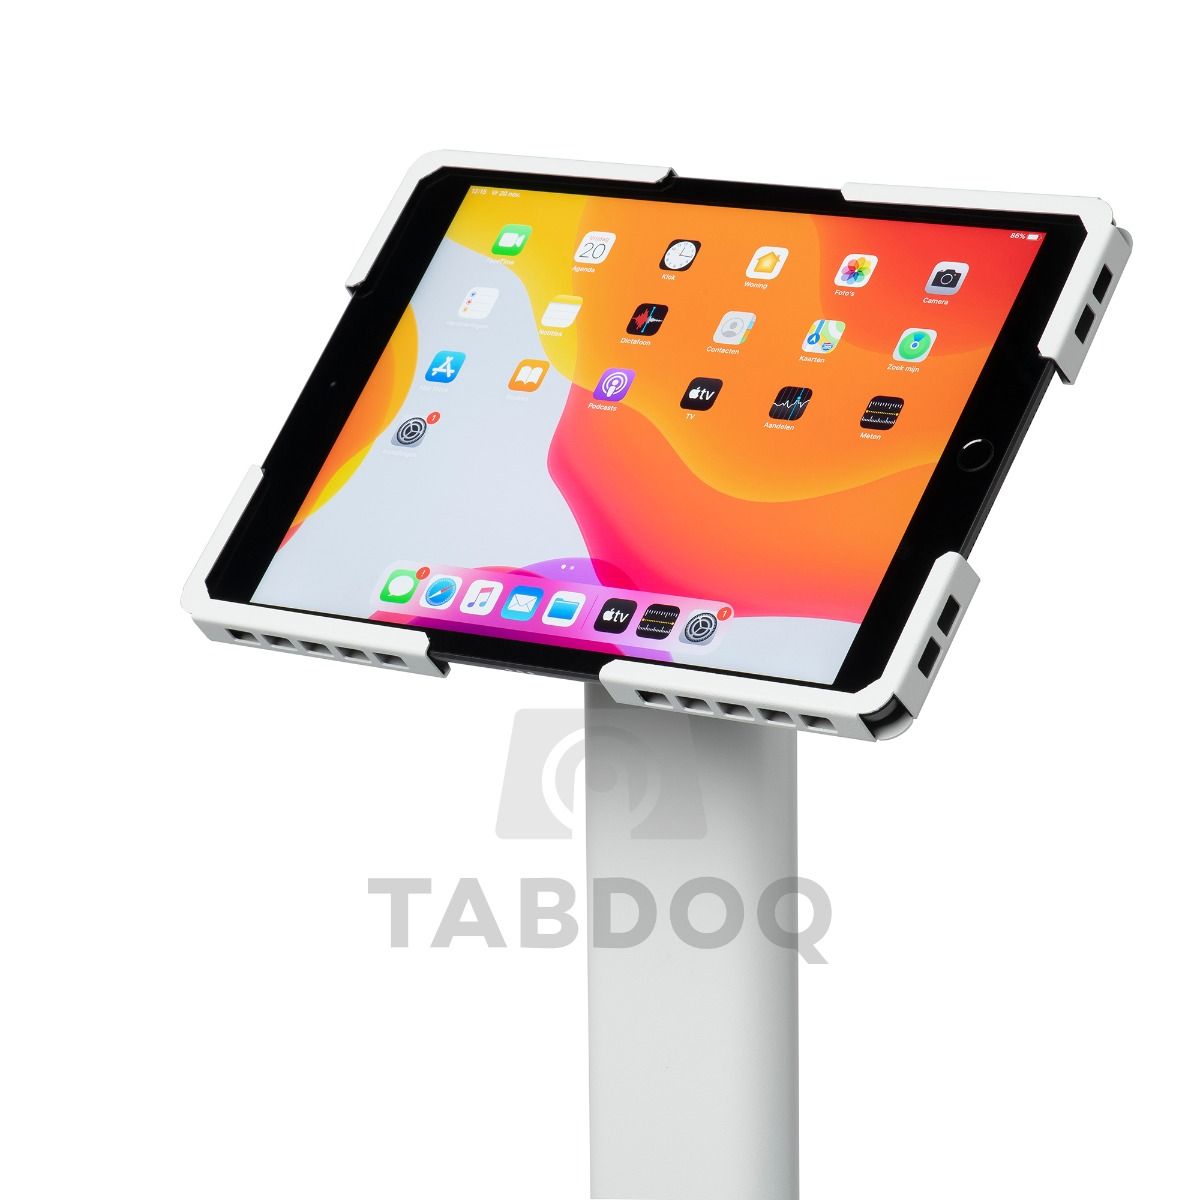 Tabdoq universeller in Höhe verstellbarer Tablet Bodenständer